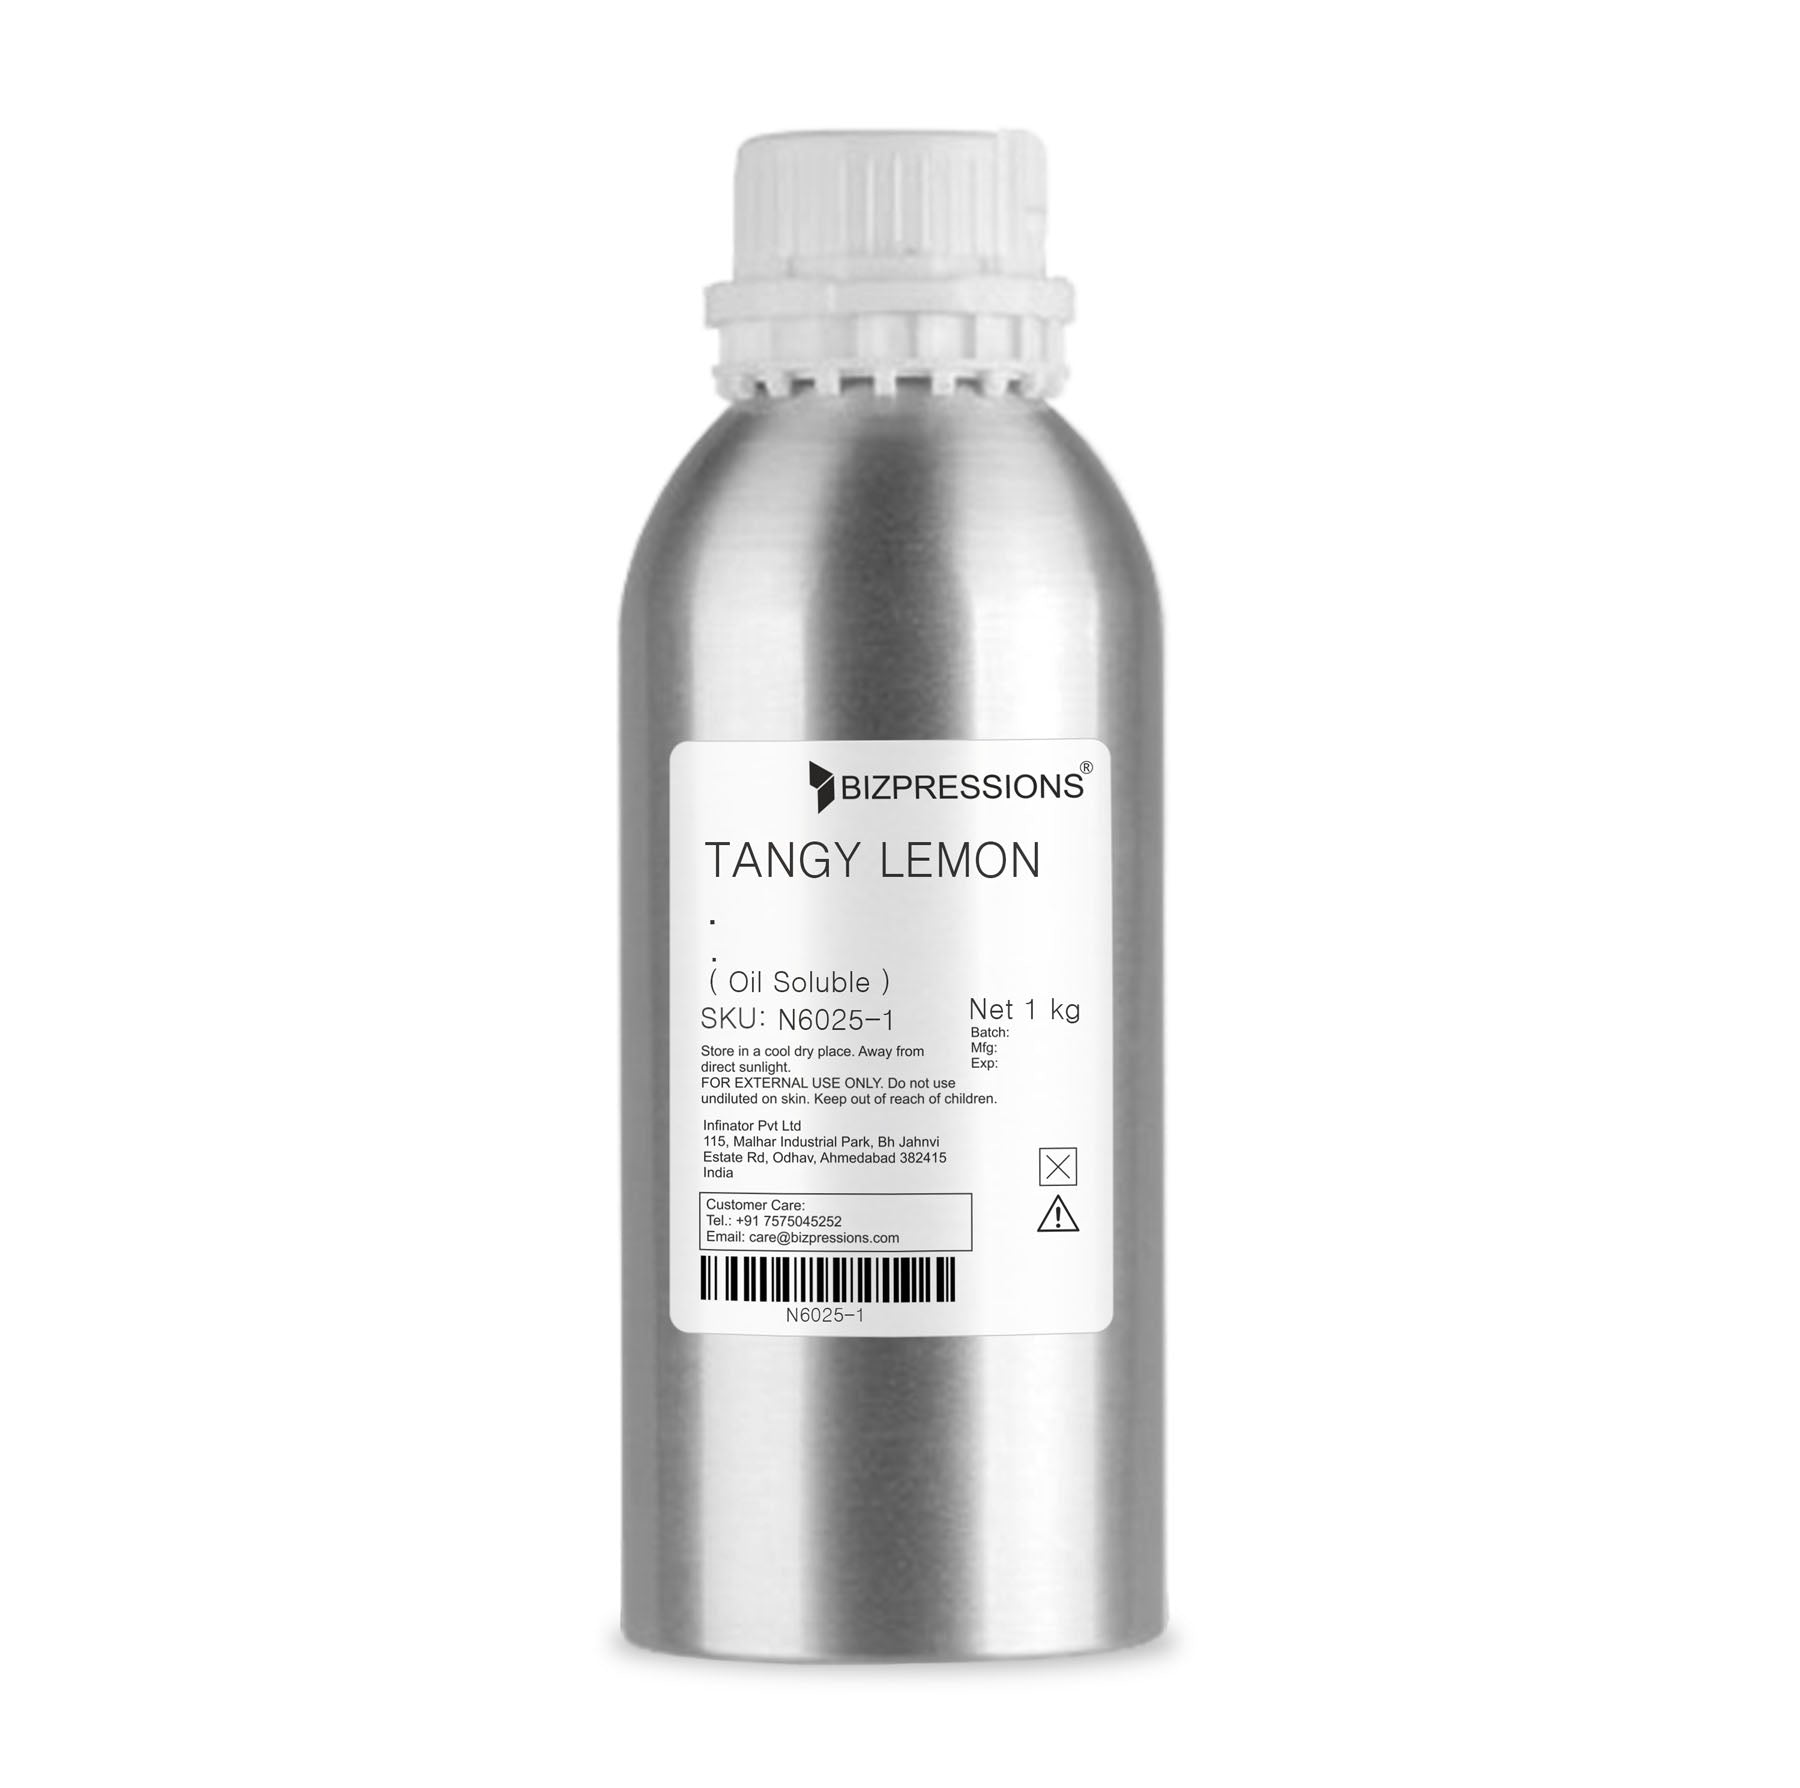 TANGY LEMON - Fragrance ( Oil Soluble ) - 1 kg